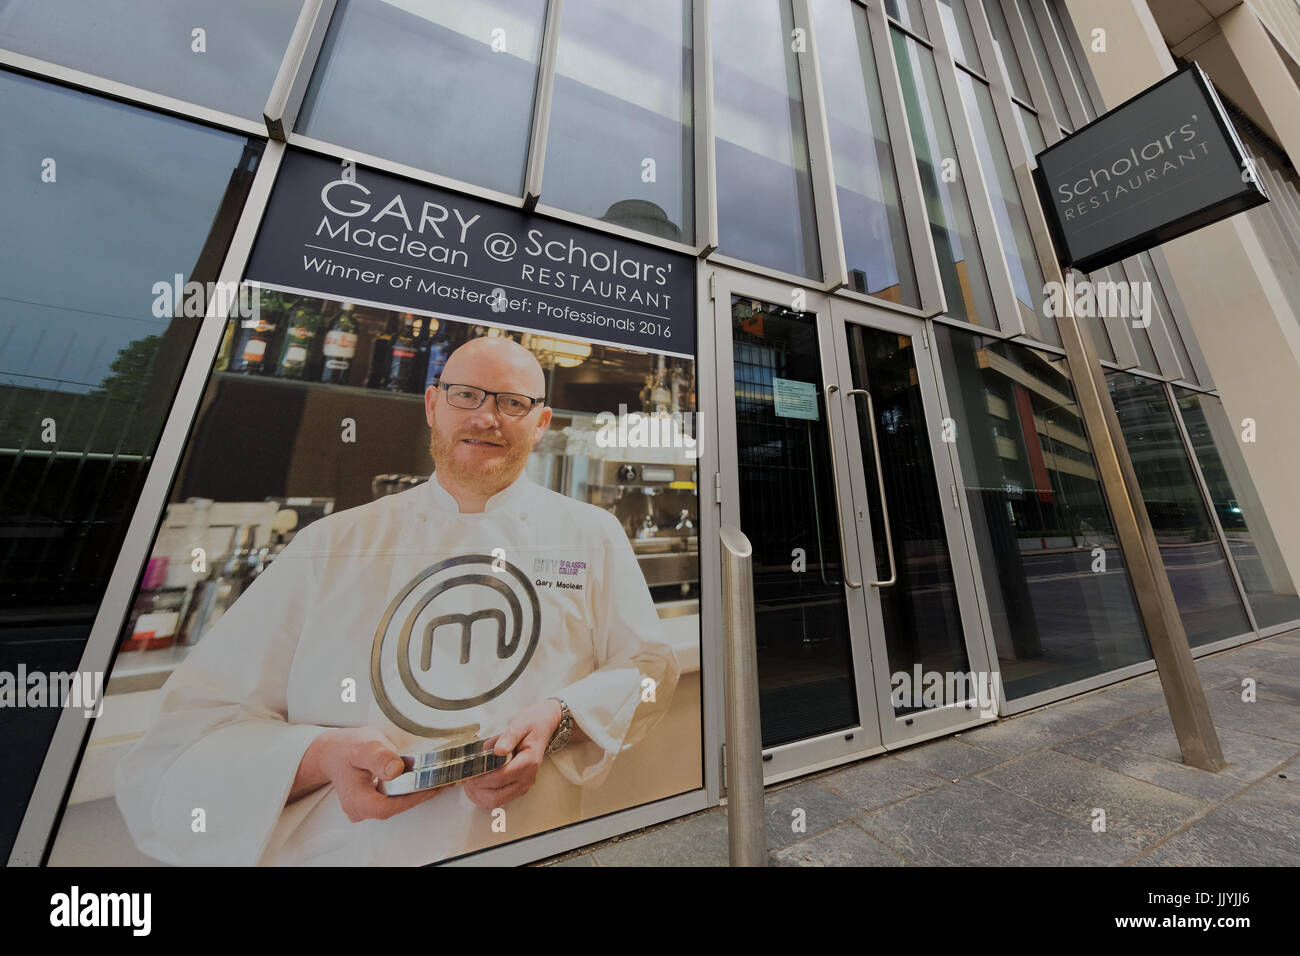 Stadt Glasgow College Scholars' lizenzierte Ausbildung restaurant Gary Maclean. Stockfoto